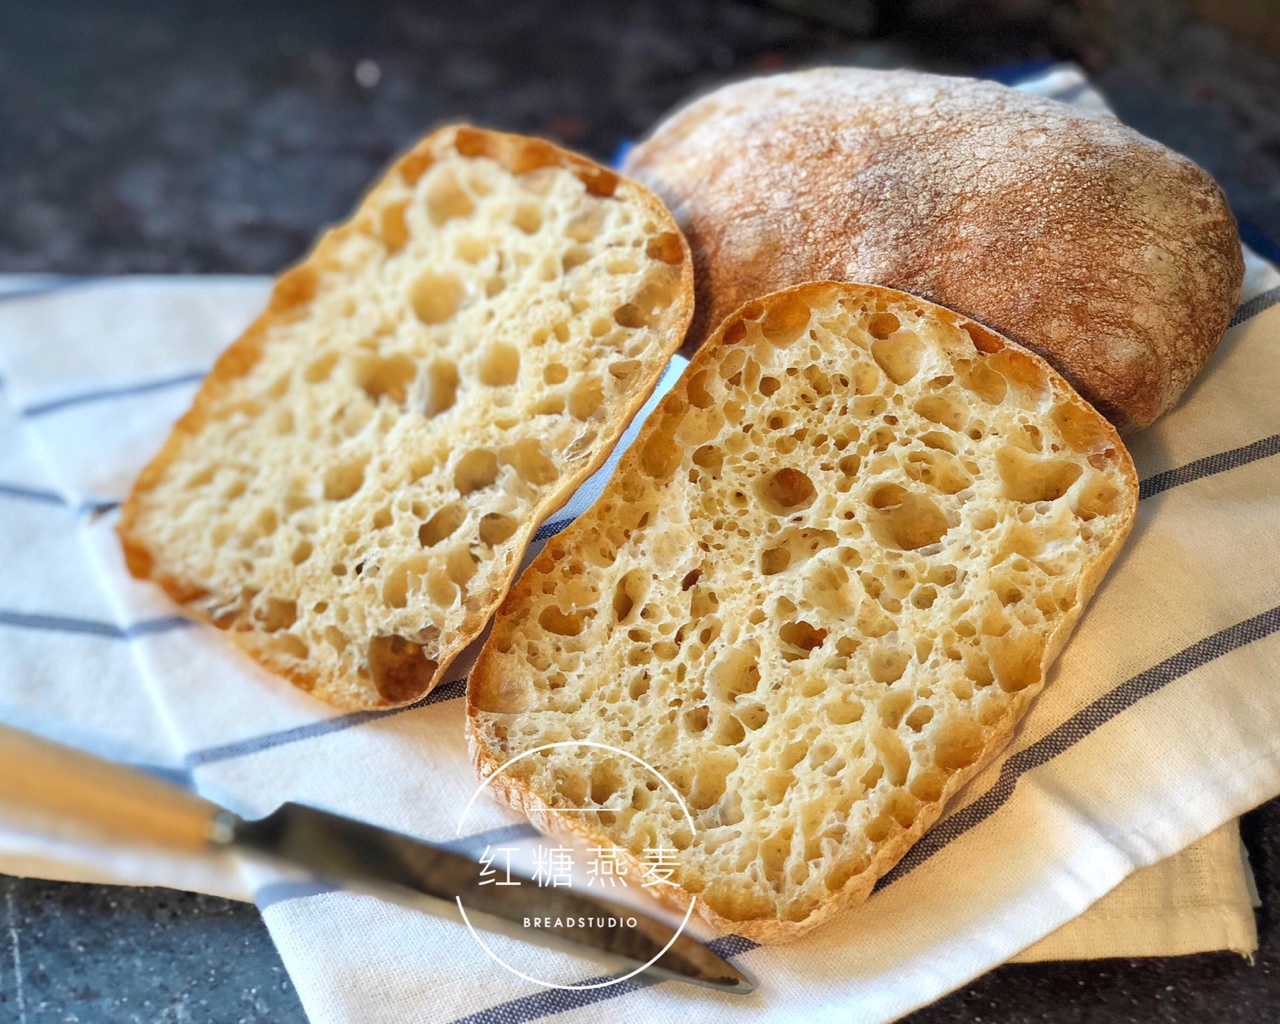 意大利恰巴塔面包